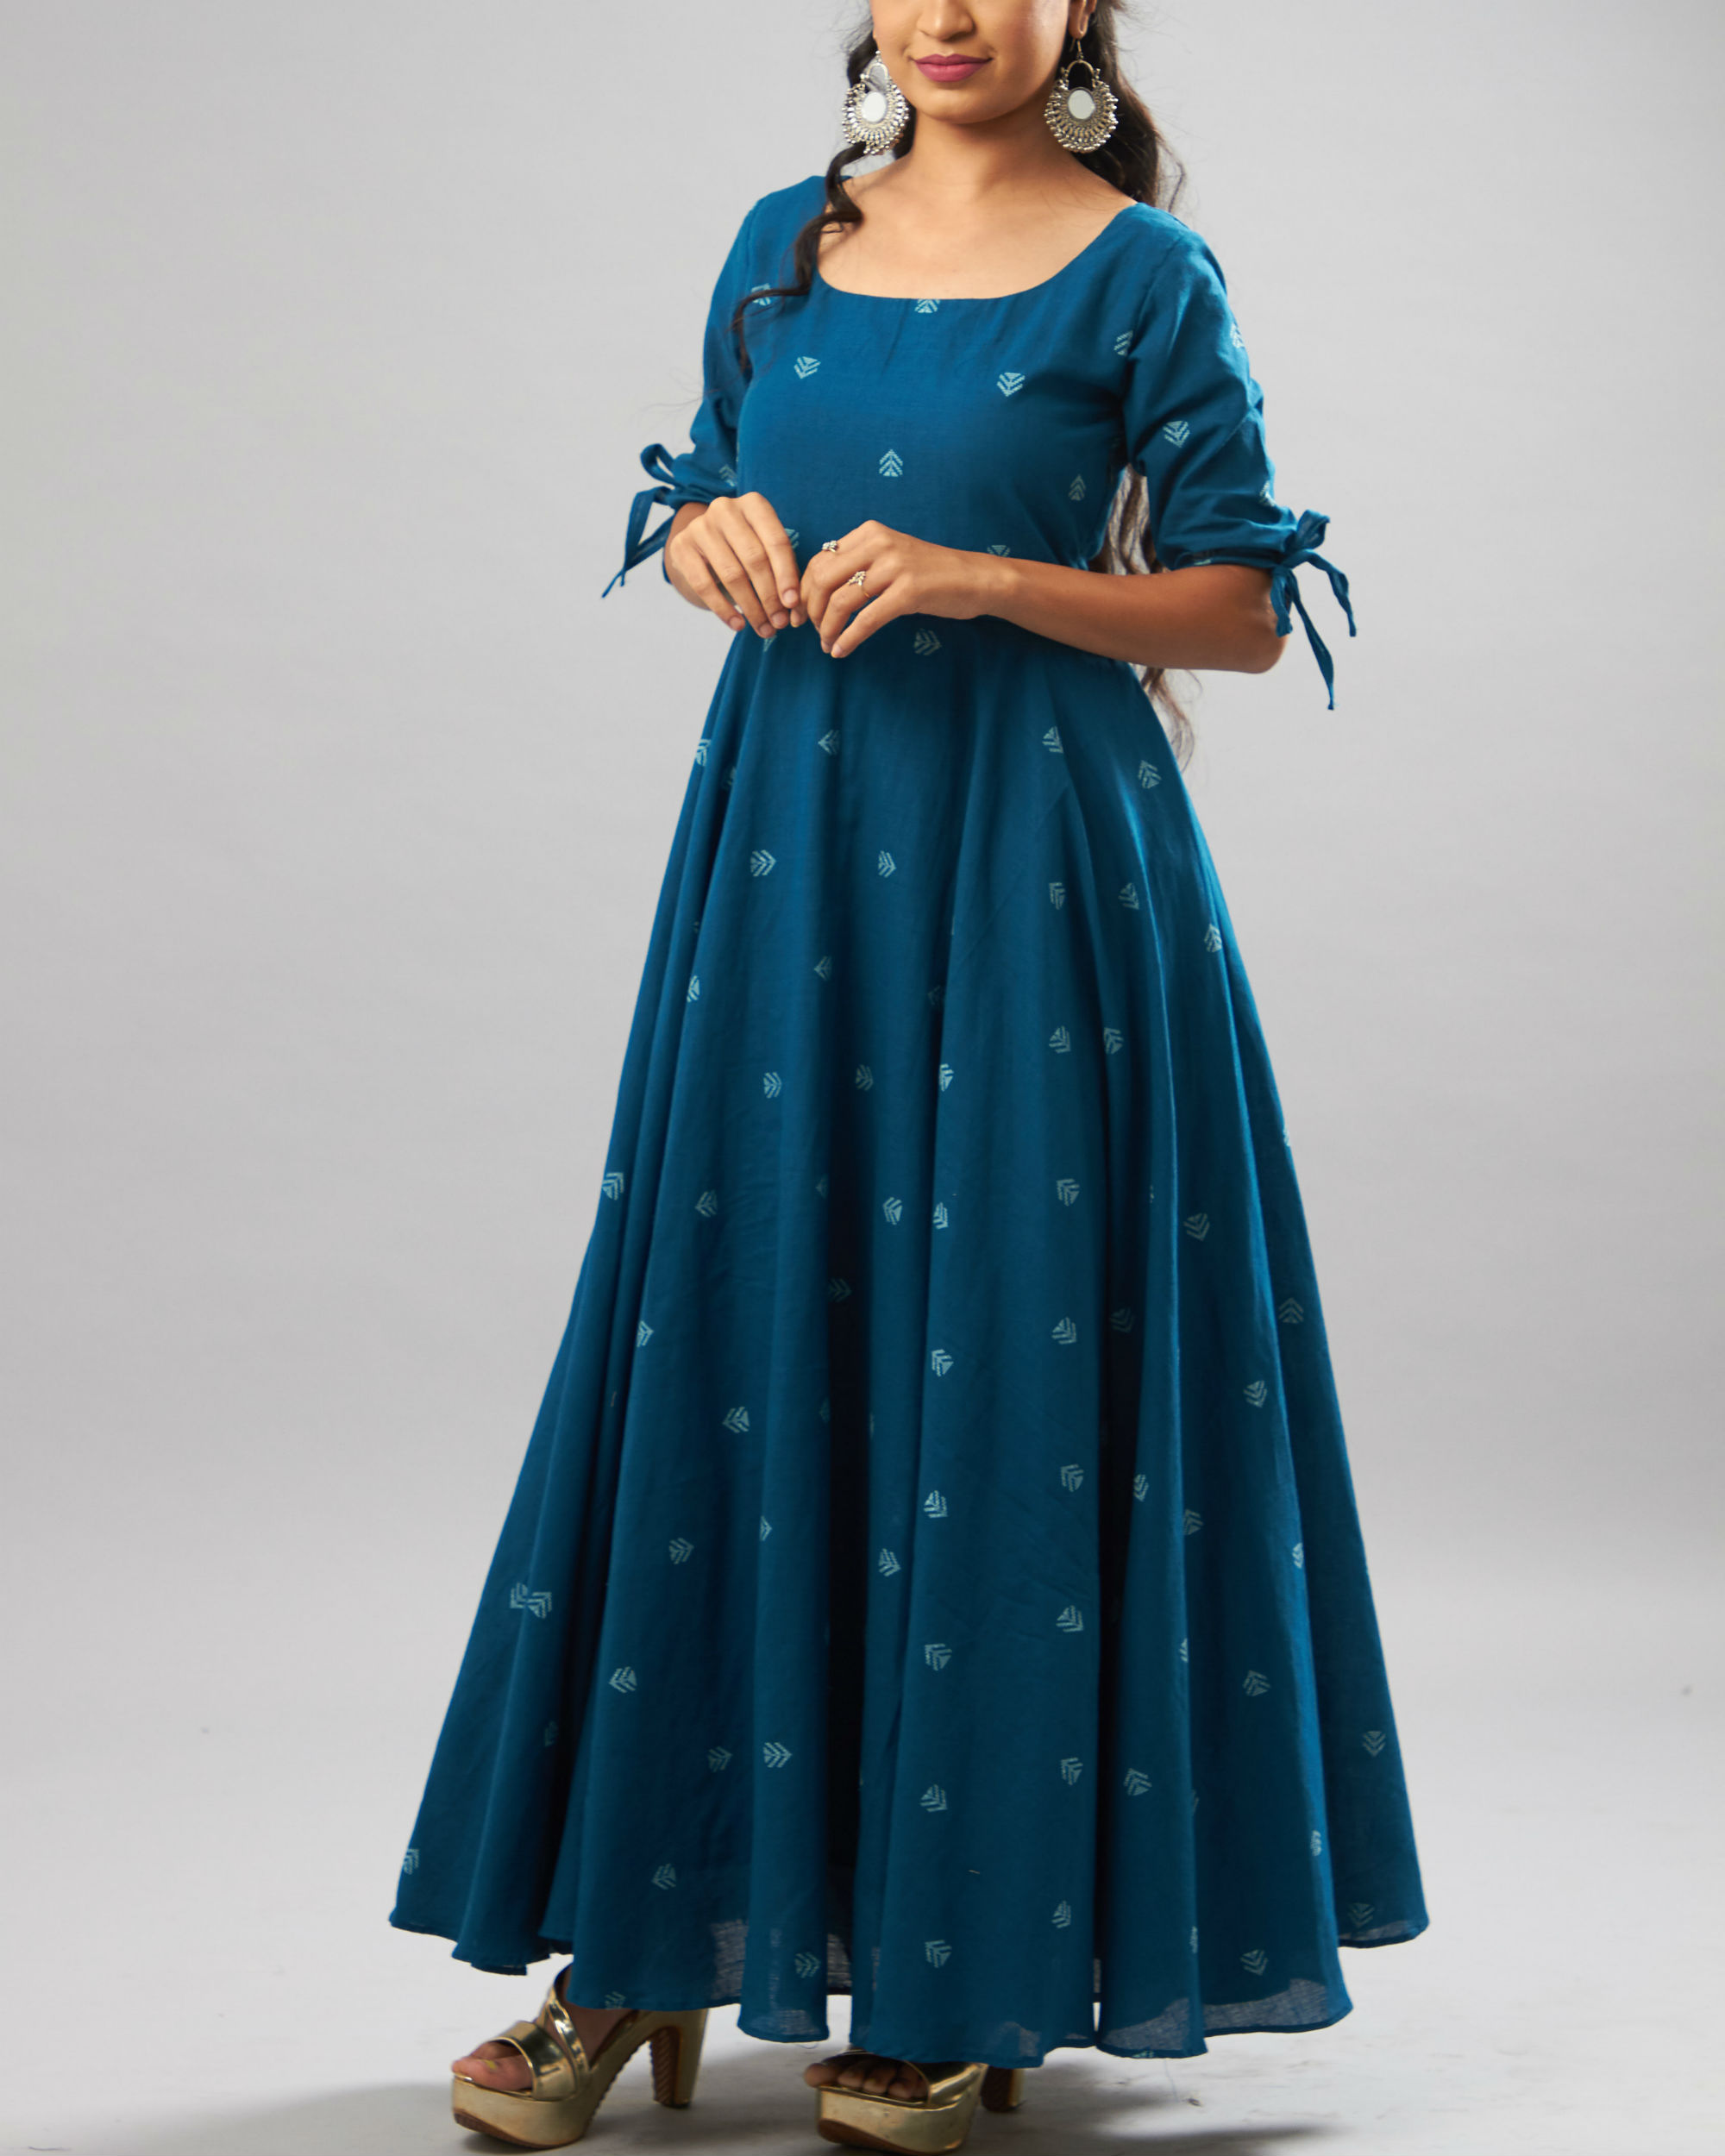 Blue cotton jacquard dress by The Stitches | The Secret Label